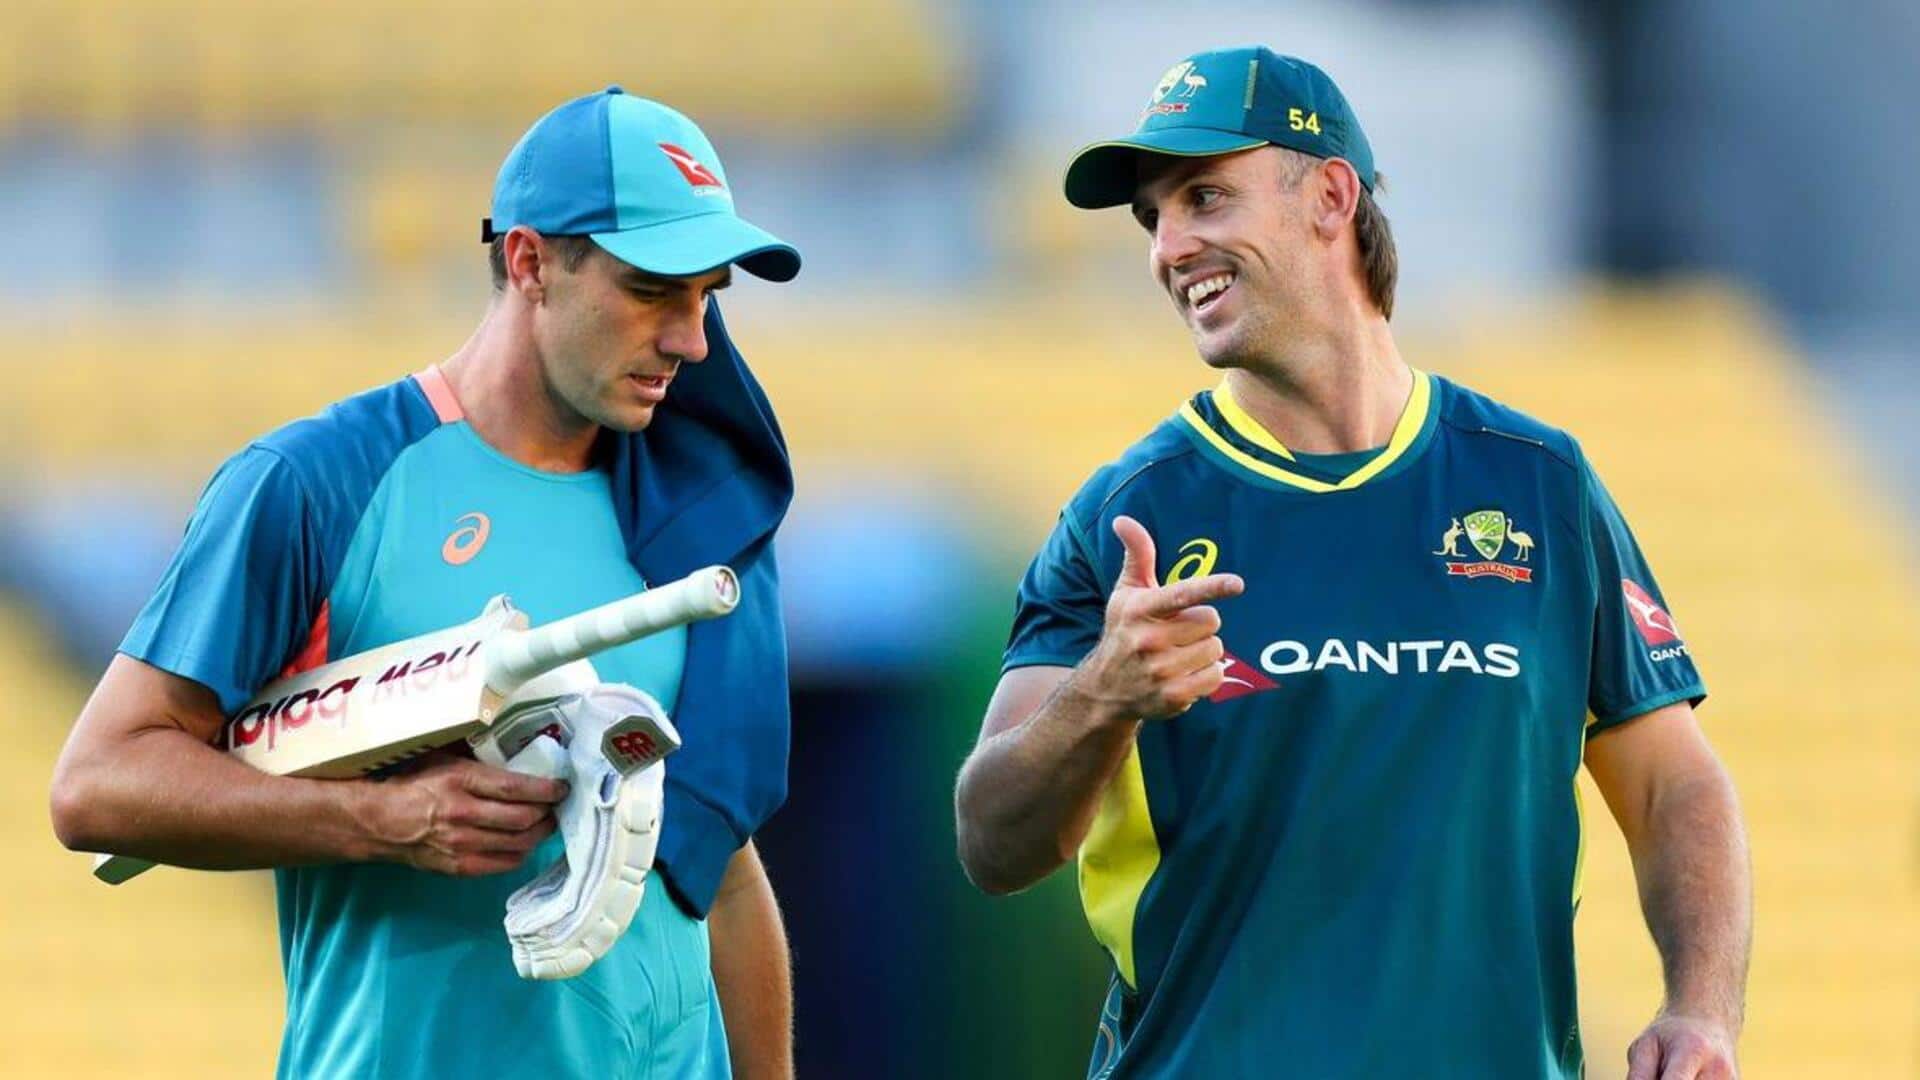 मिचेल मार्श टी-20 विश्व कप में हो सकते हैं ऑस्ट्रेलिया के कप्तान, जानिए कारण